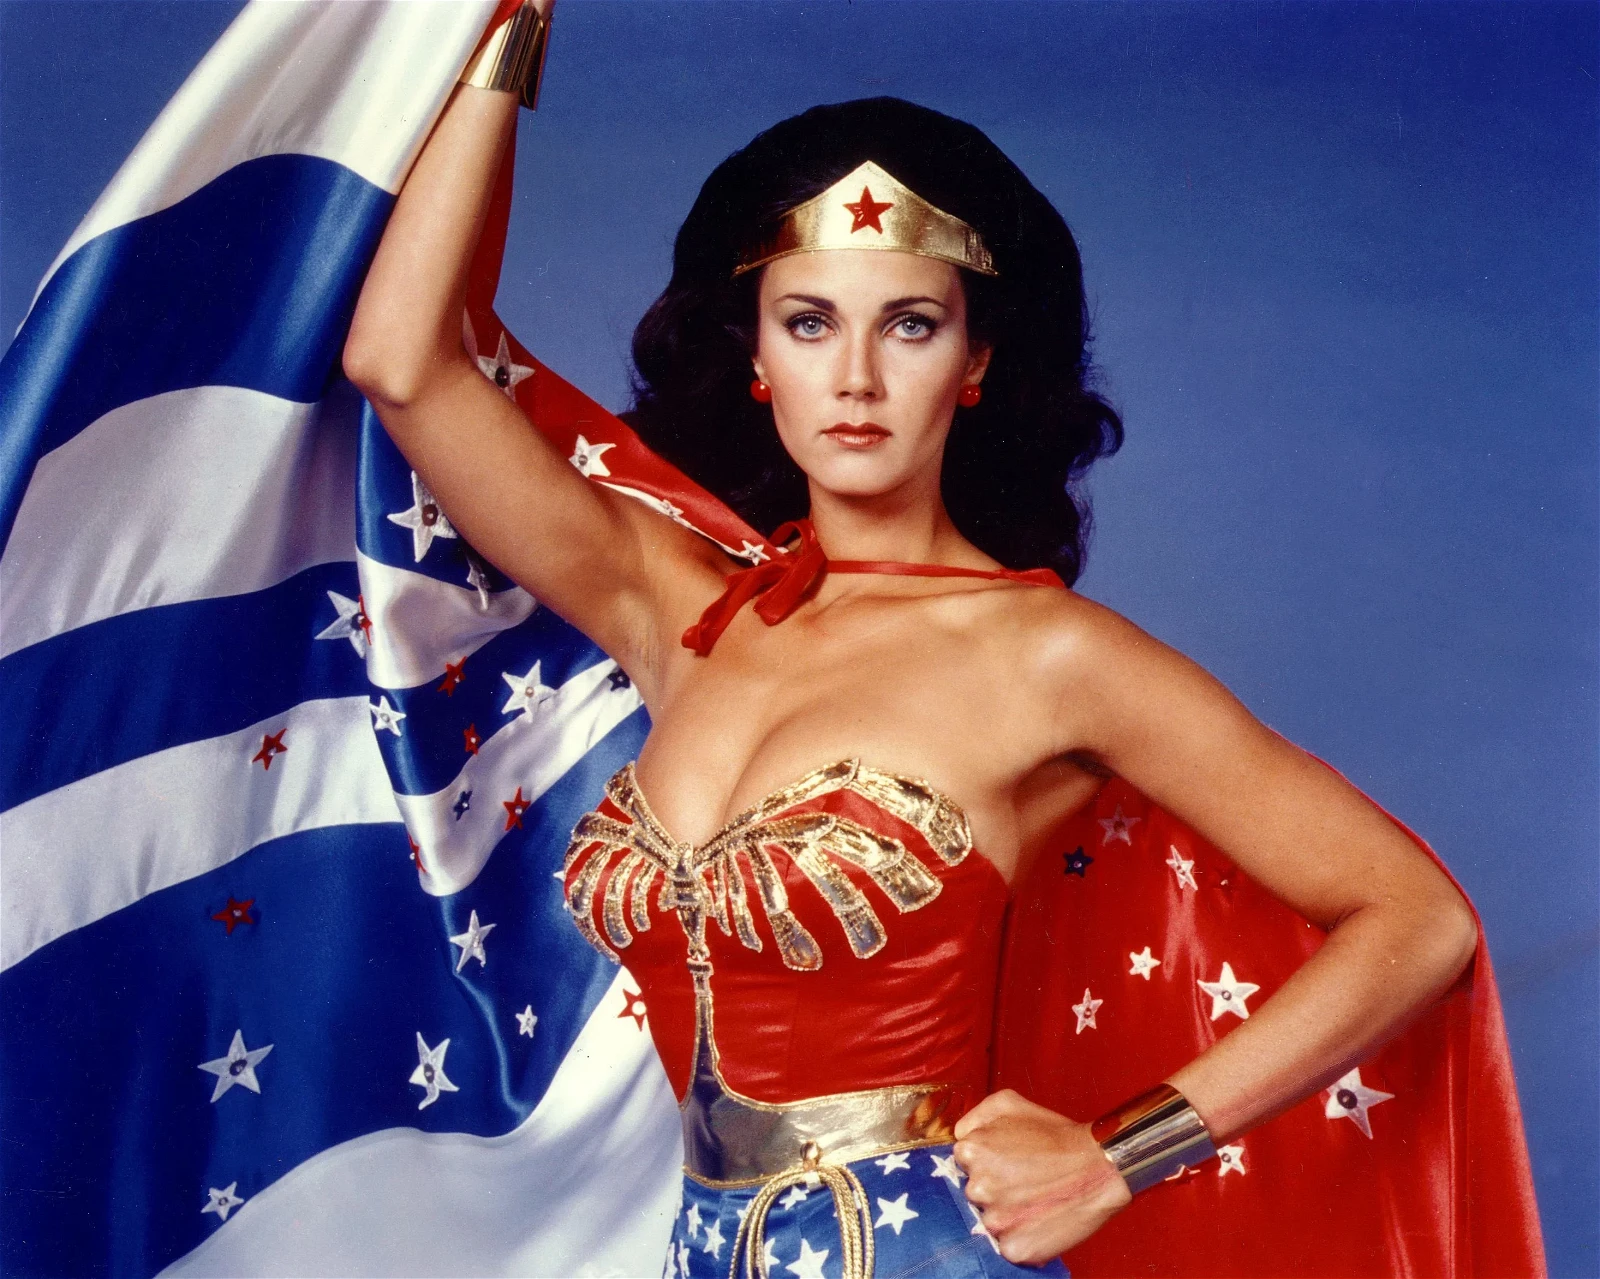 Lynda Carter as Wonder Woman in Wonder Woman (1975-1979).